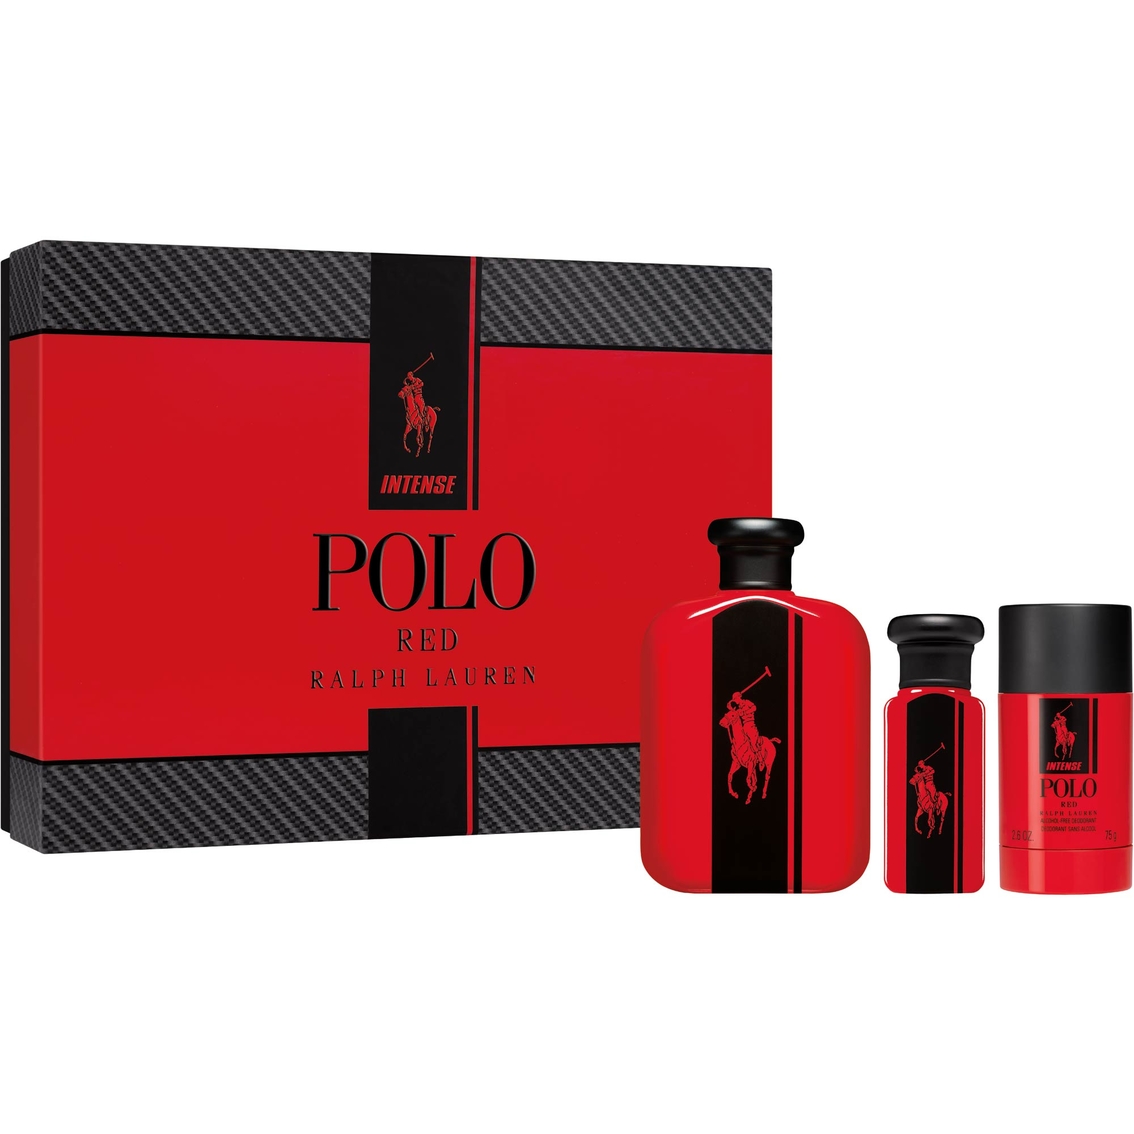 polo gift sets